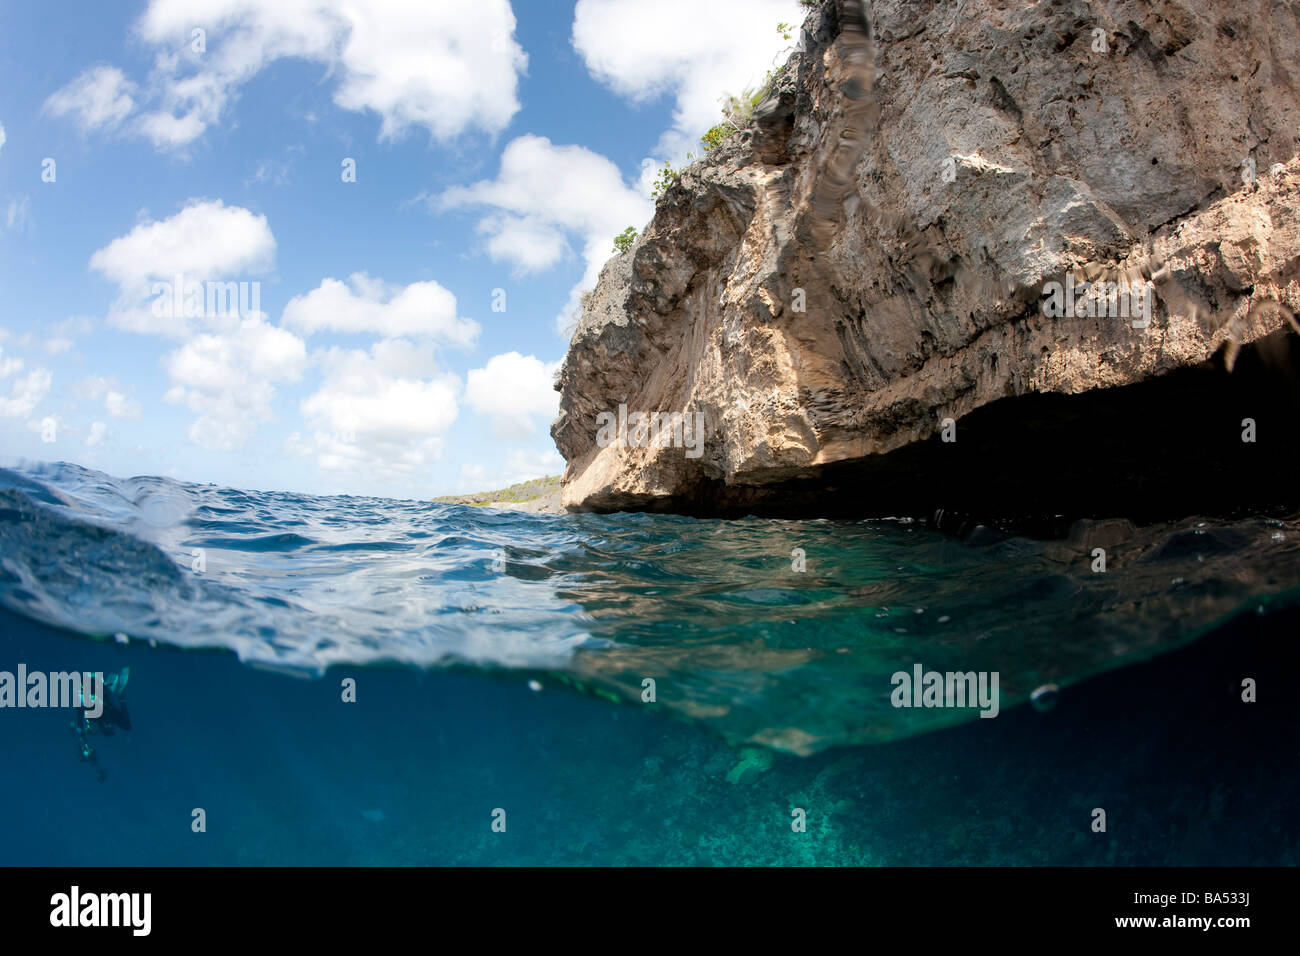 La vista suddivisa di al di sopra e al di sotto dell'acqua, Bonaire, Antille olandesi. Foto Stock